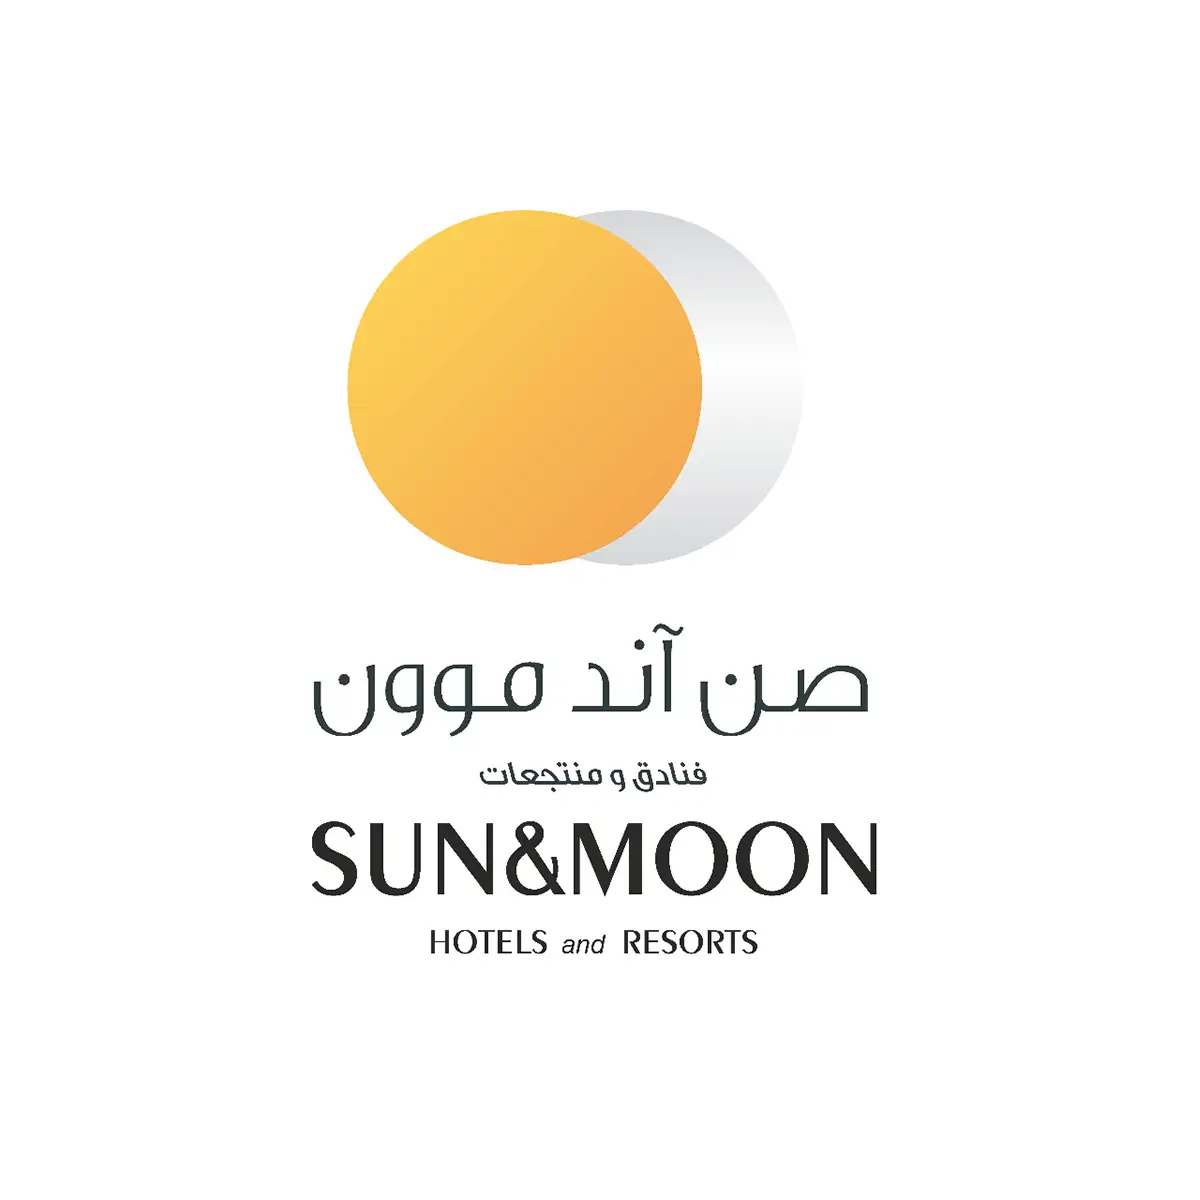 Sun & moon hotels logo